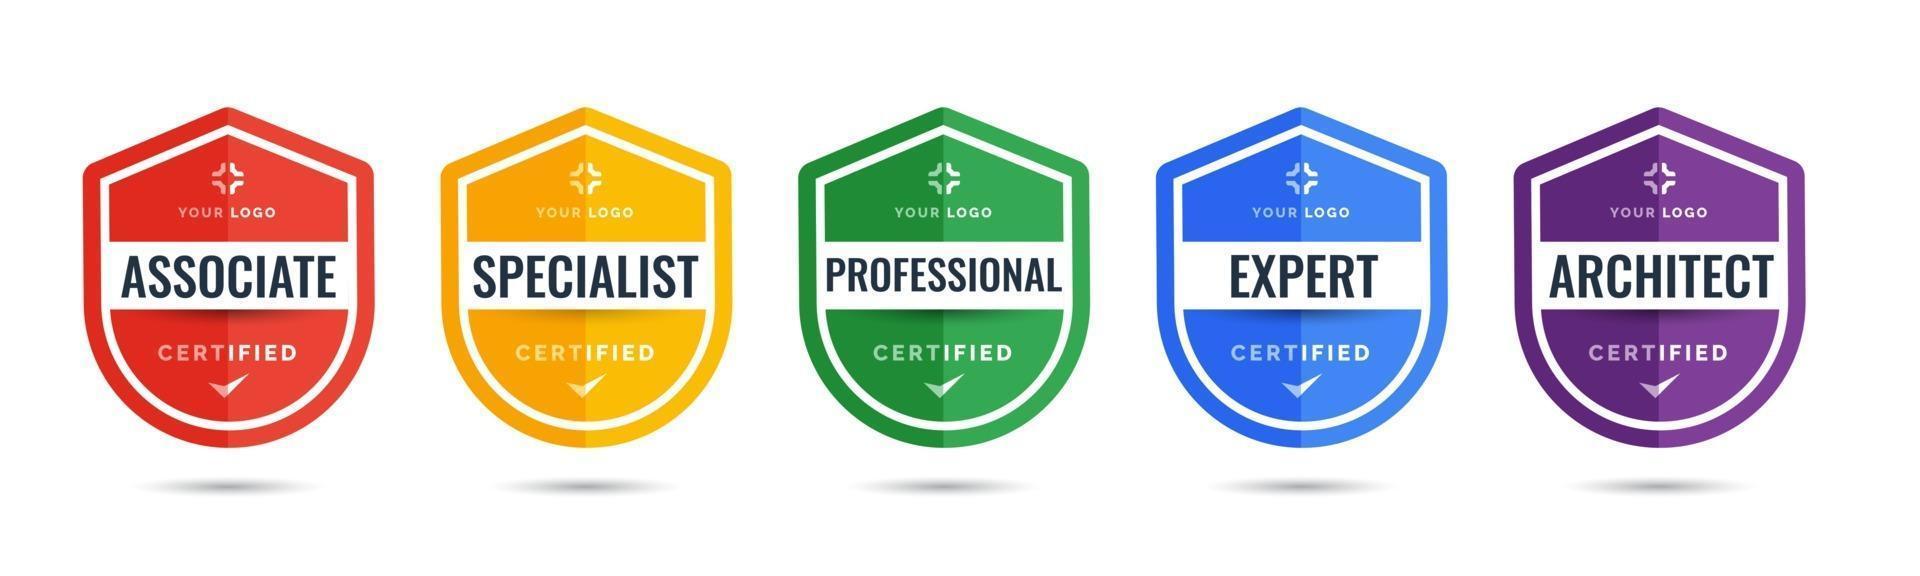 certifierad logotypskyltdesign för företagsutbildning av märkescertifikat för att bestämma utifrån kriterier. uppsättning bunt certifiera med färgglada säkerhetsvektorillustration. vektor